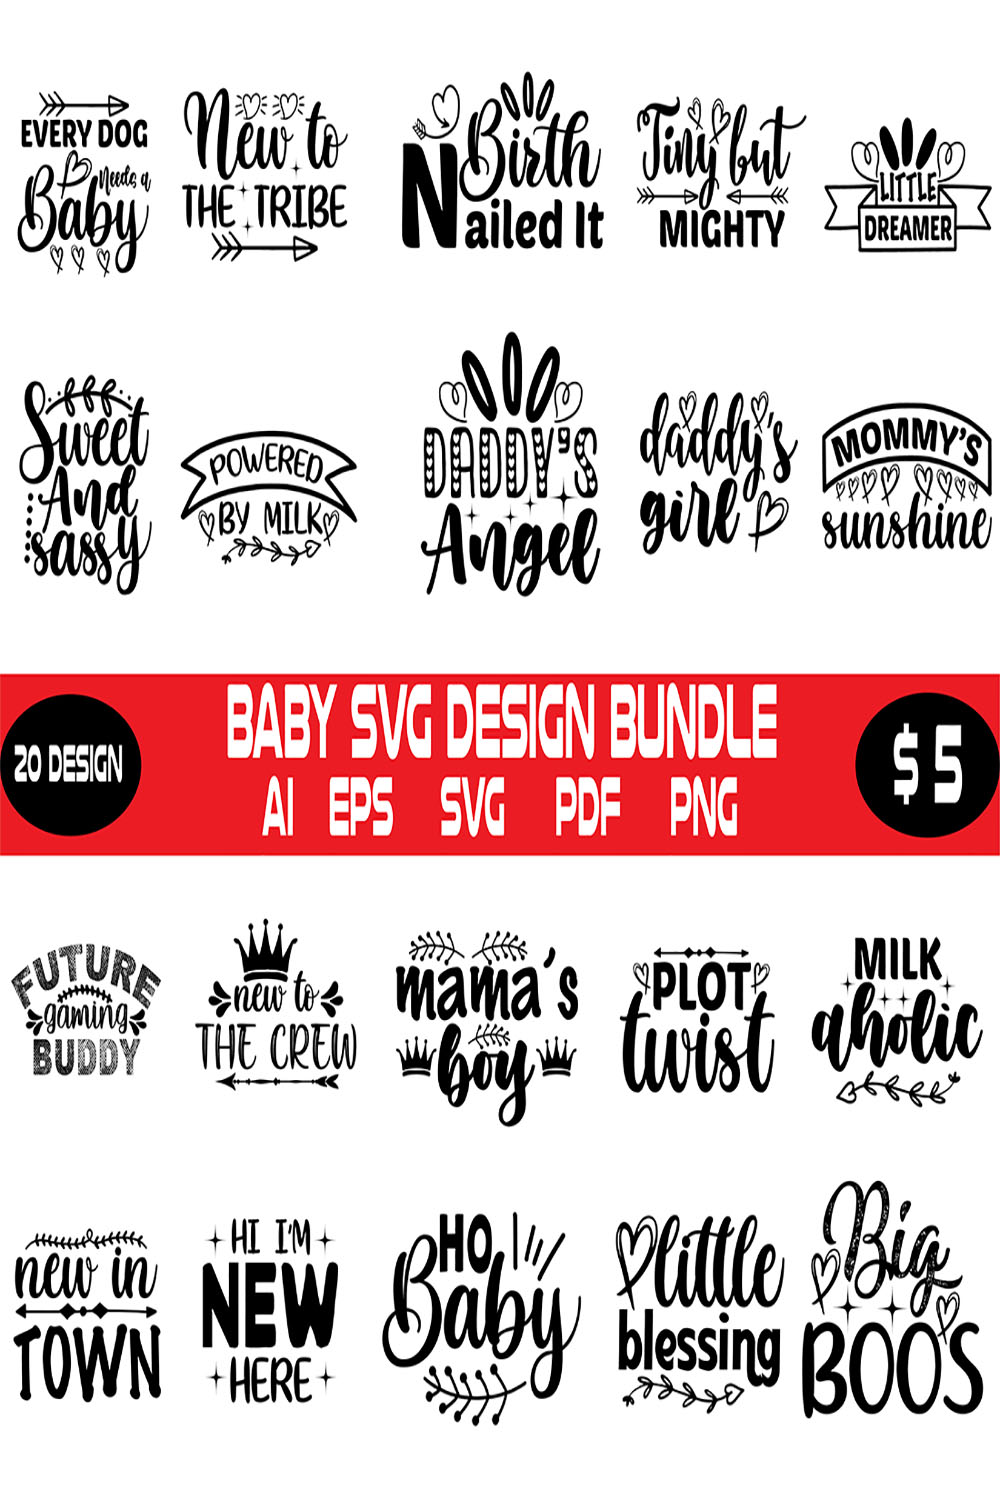 Baby Svg Design Bundle pinterest preview image.